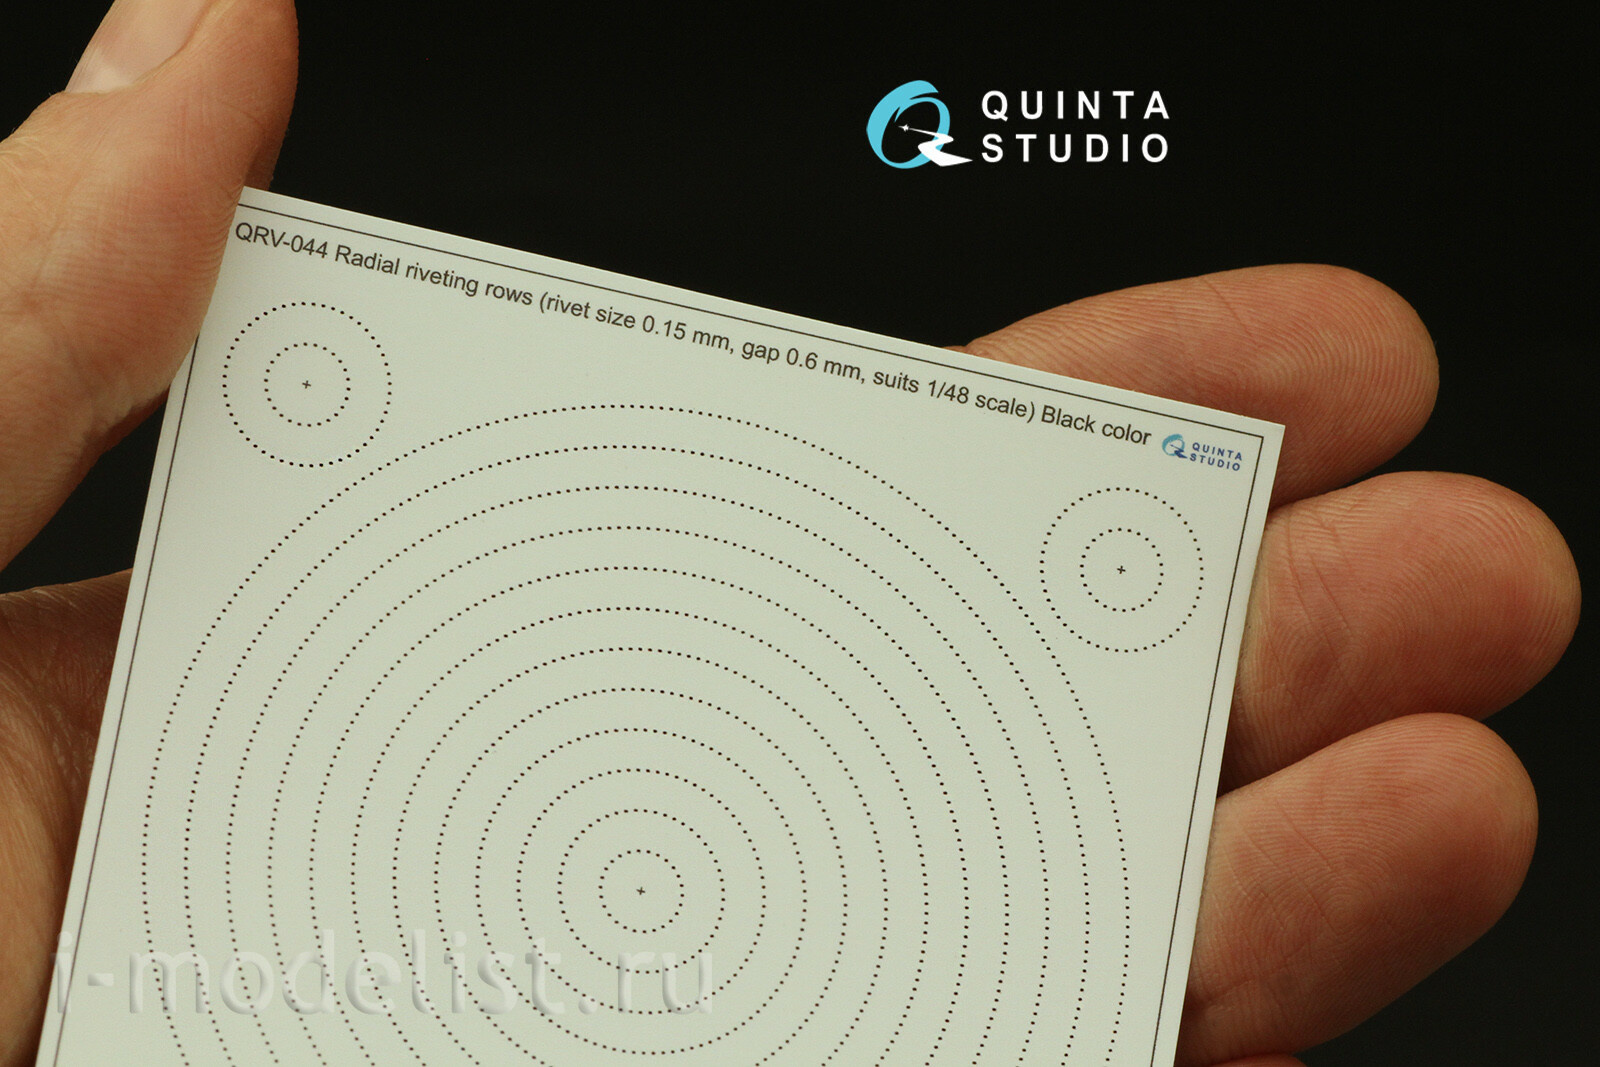 QRV-044 Quinta Studio 1/72 Радиальные клепочные ряды (размер клепки 0.15 mm, интервал 0.6 mm, масштаб 1/48), черные